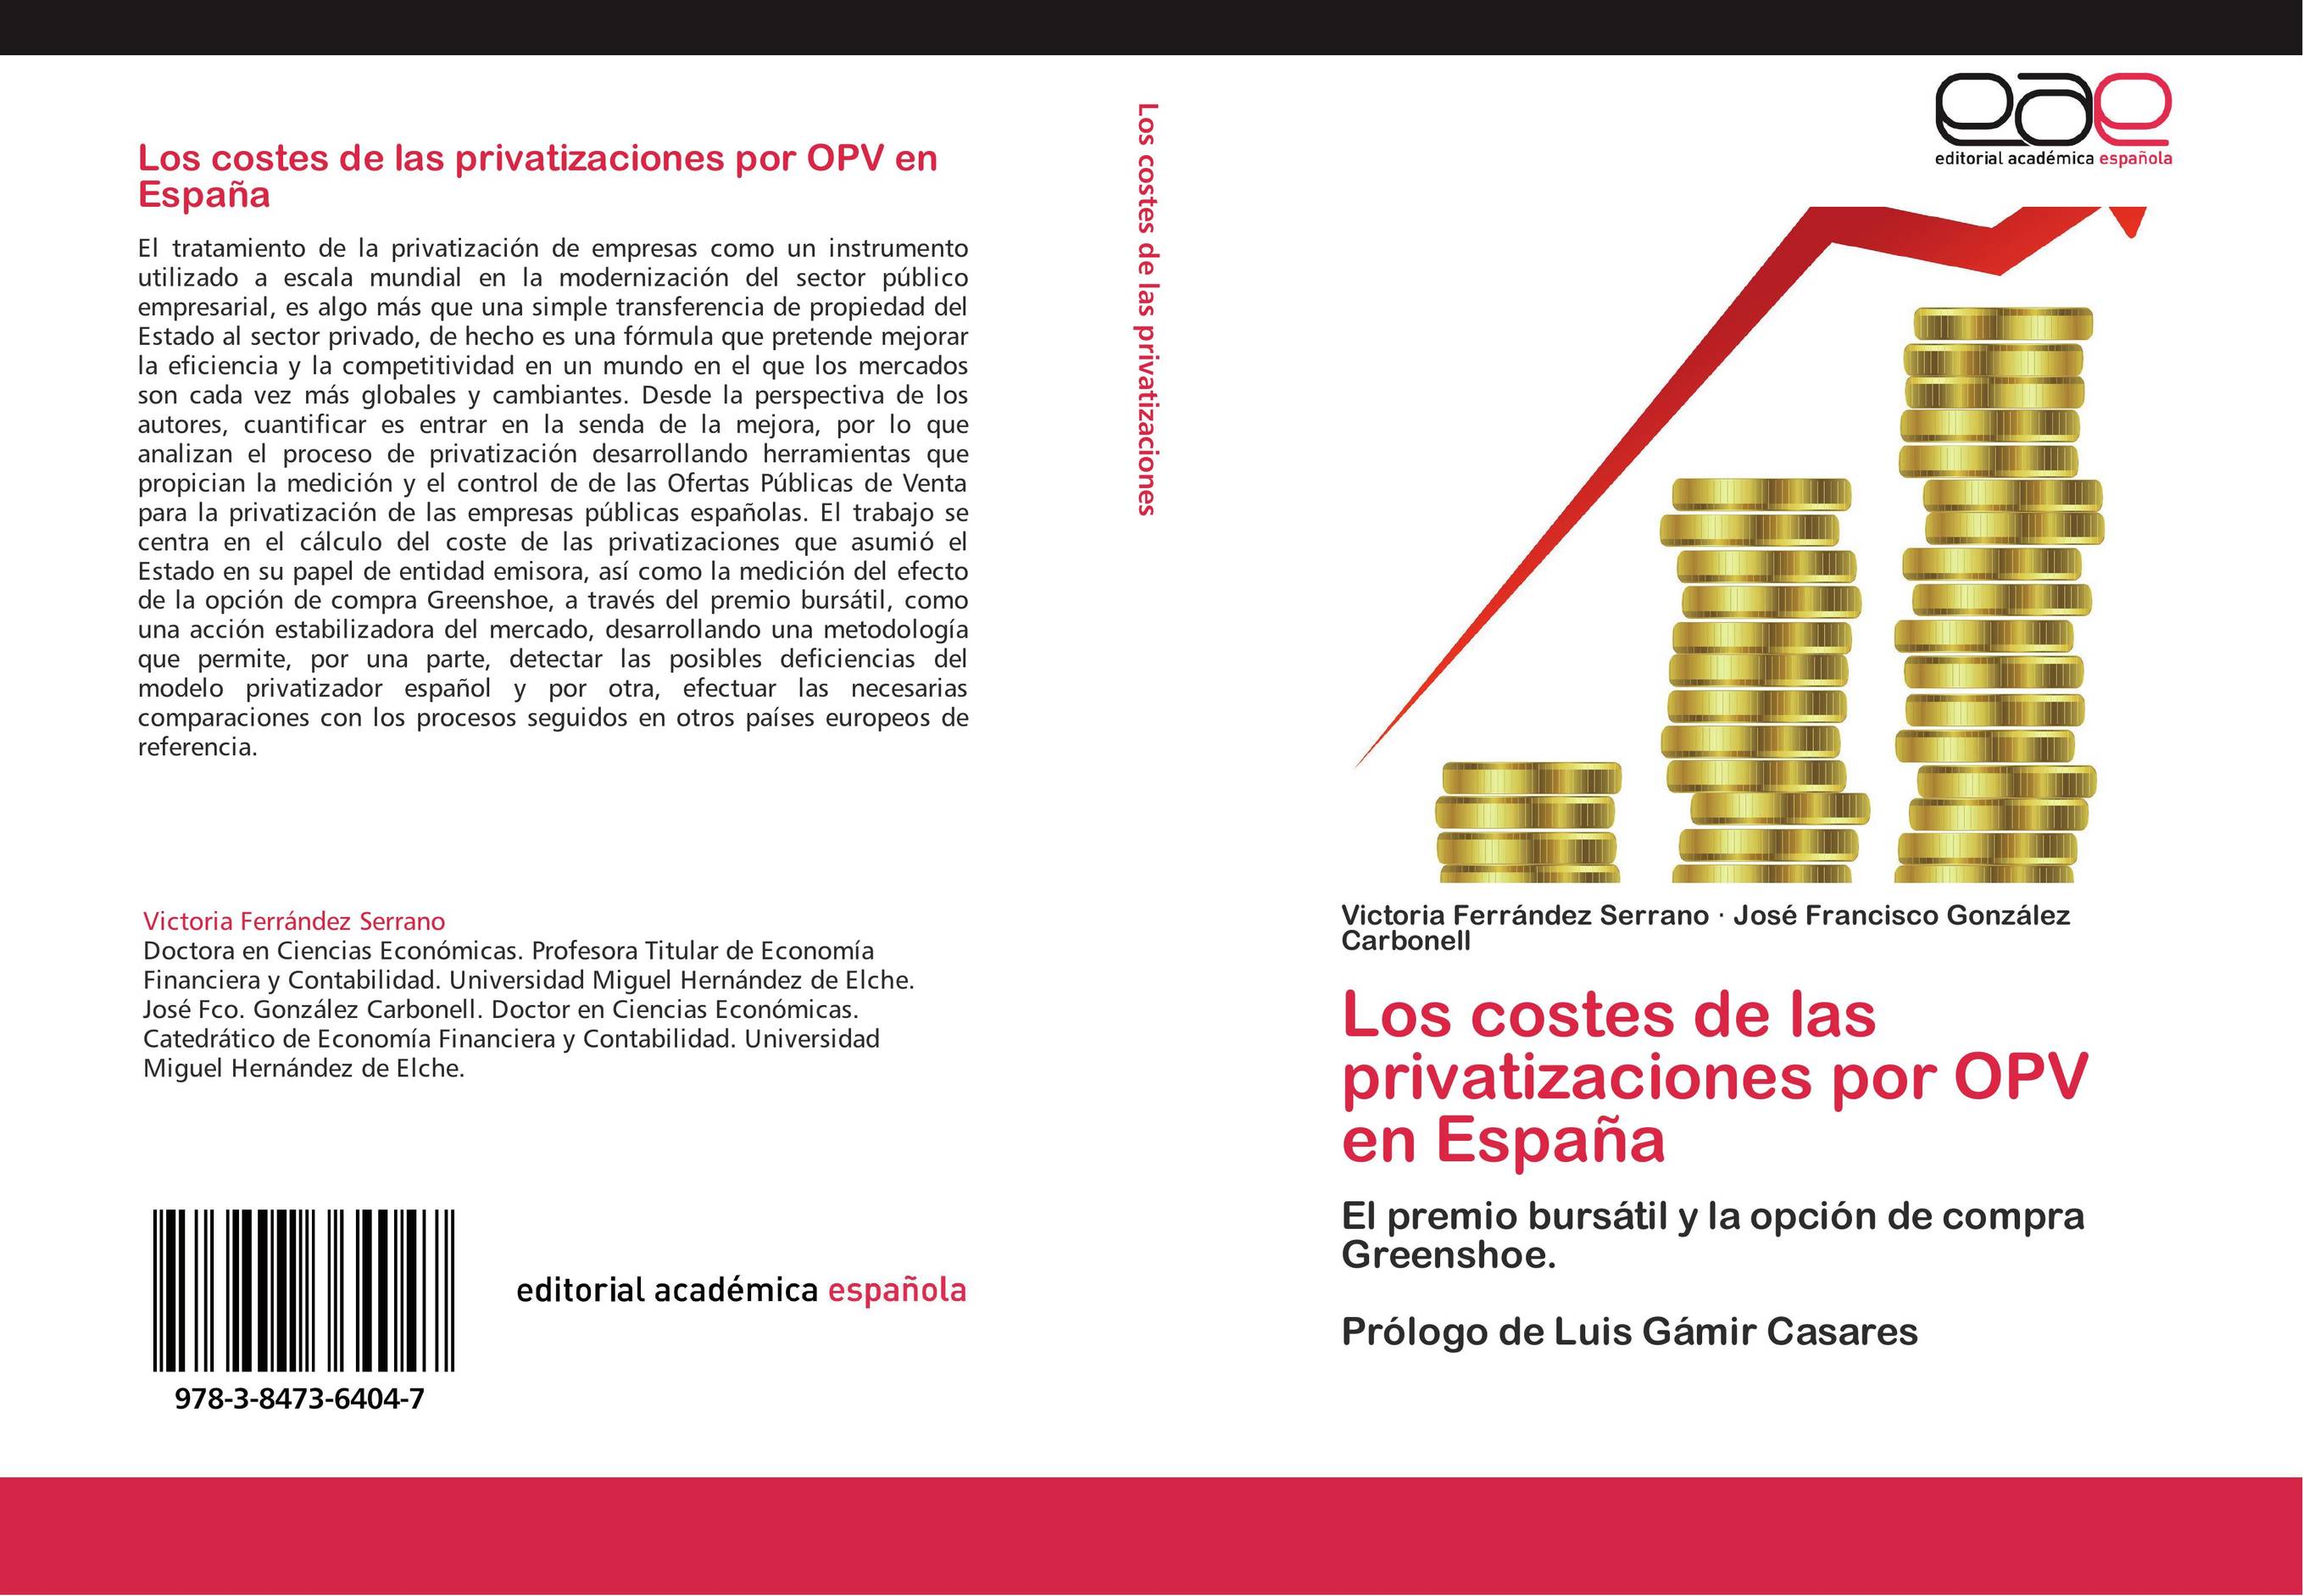 Los costes de las privatizaciones por OPV en España